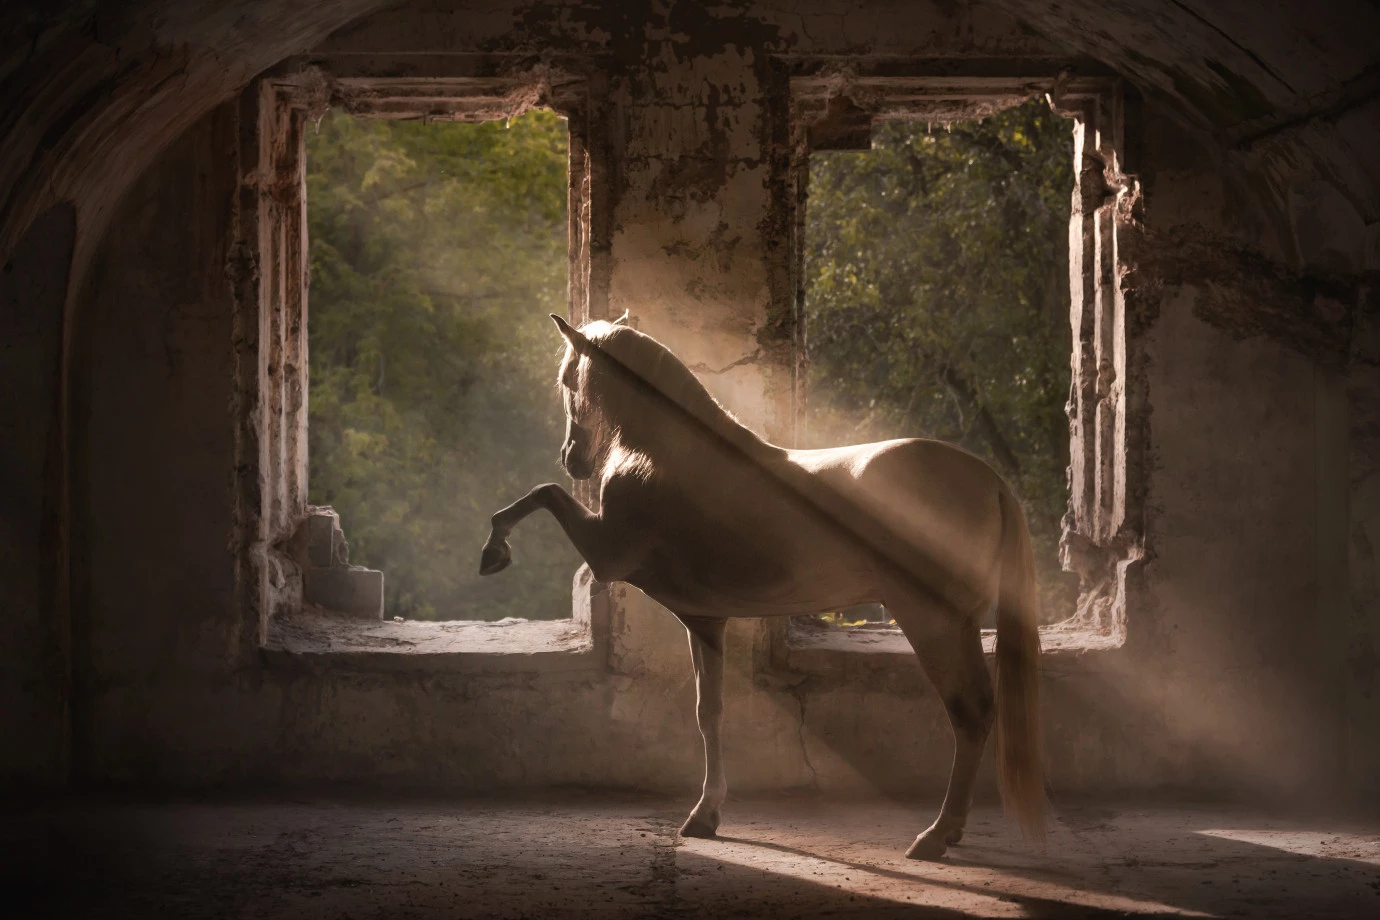 fotograf szczecin wnuku-robi-zdjecia portfolio zdjecia zwierzat sesja zdjeciowa konie psy koty